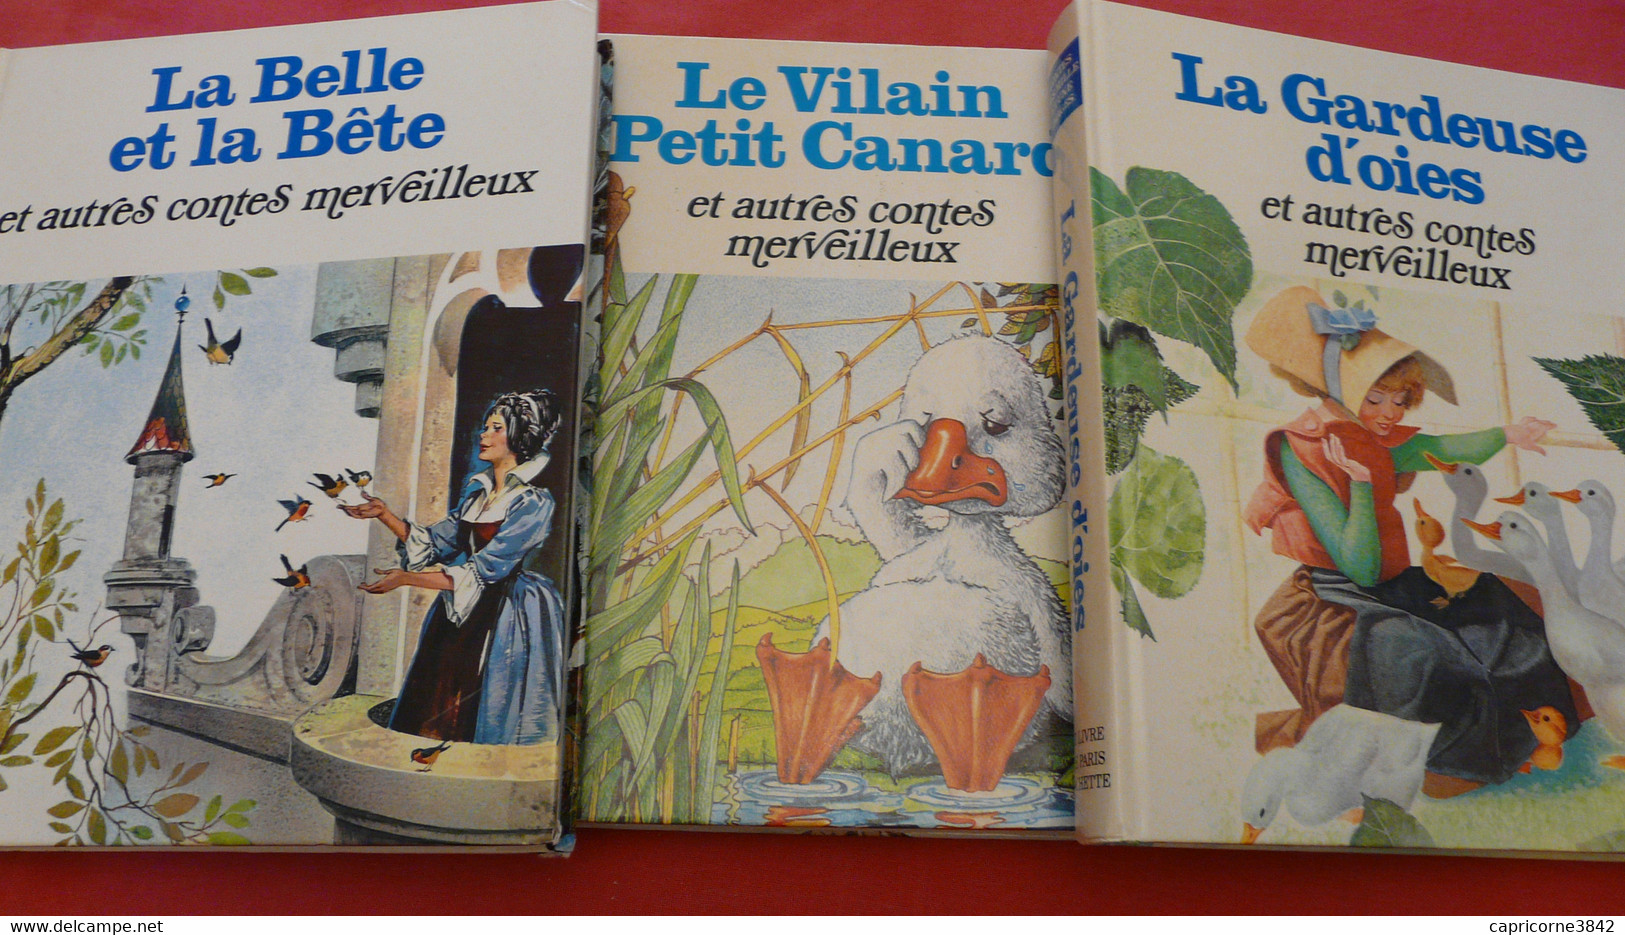 3 Beaux Livres De Contes LA GARDEUSE D'OIES - LE VILAIN PETIT CANARD - LA BELLE ET LA BÊTE - Env. 15 Contes Par Livre - Racconti